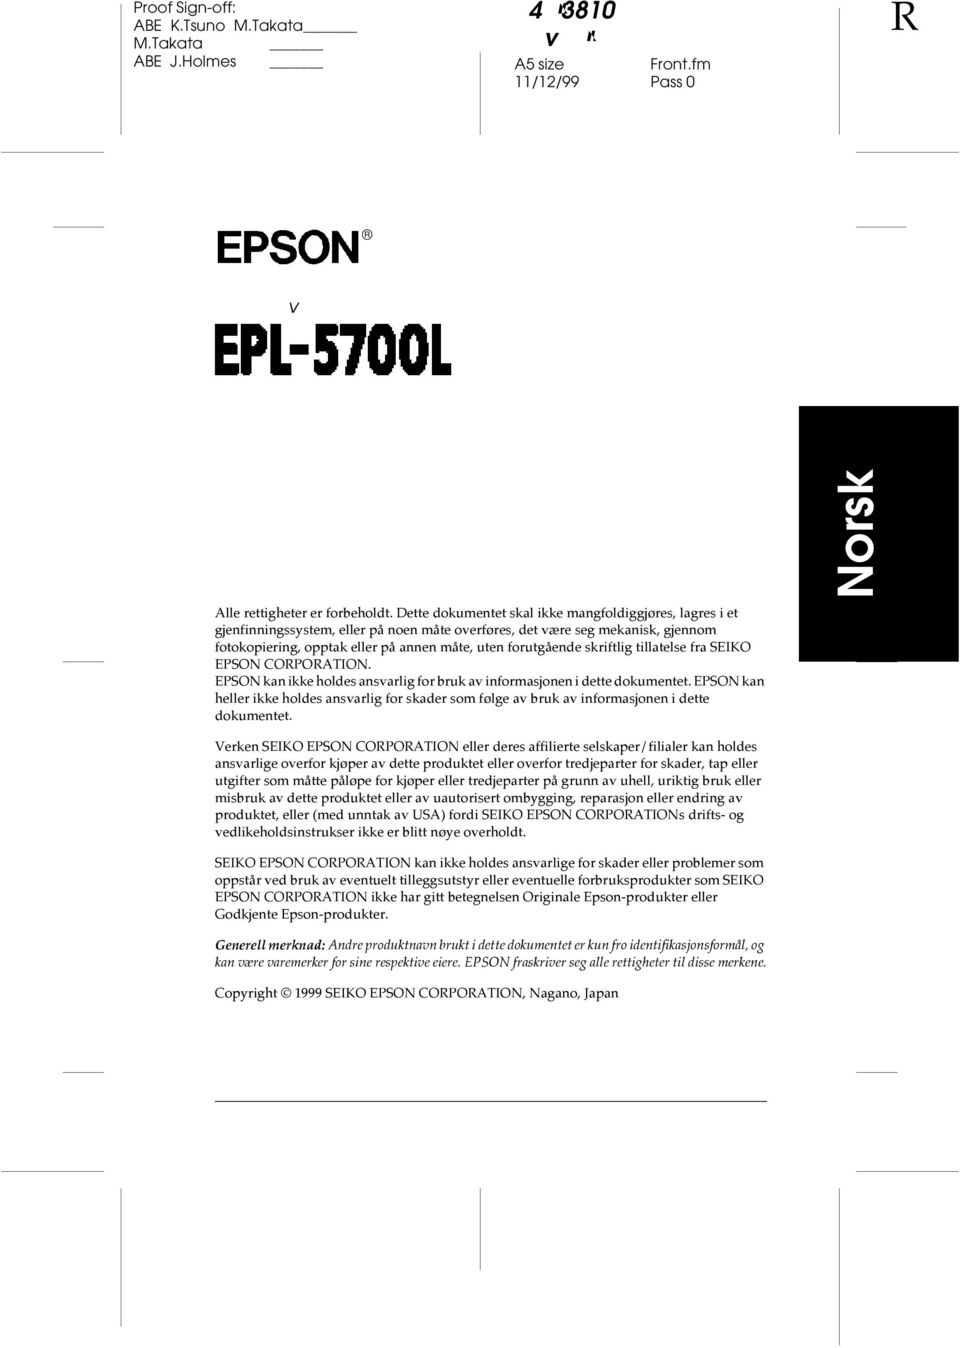 skriftlig tillatelse fra SEIKO EPSON CORPORATION. EPSON kan ikke holdes ansvarlig for bruk av informasjonen i dette dokumentet.